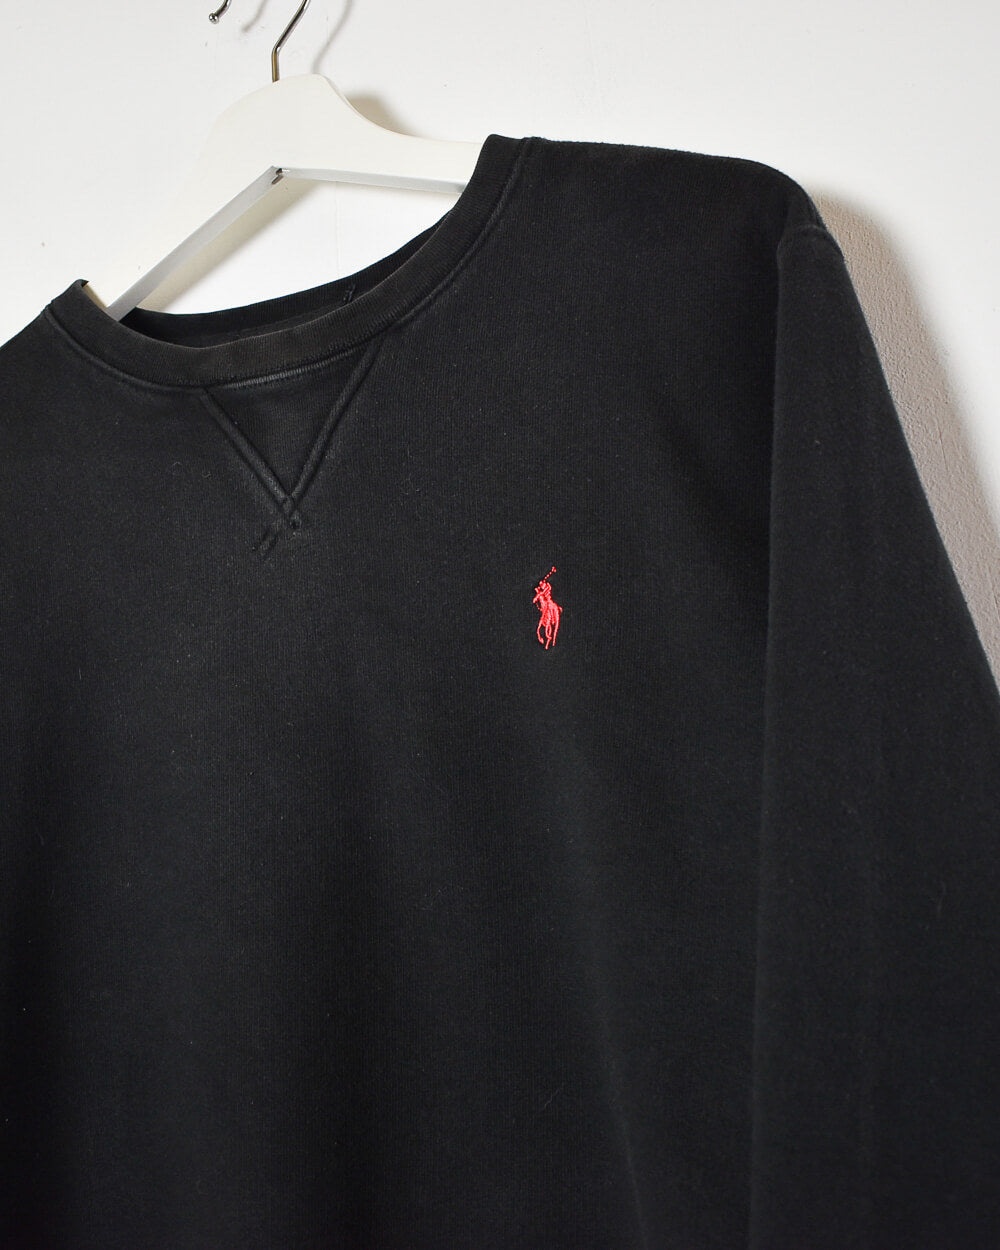 Black Ralph Lauren Sweatshirt - Small